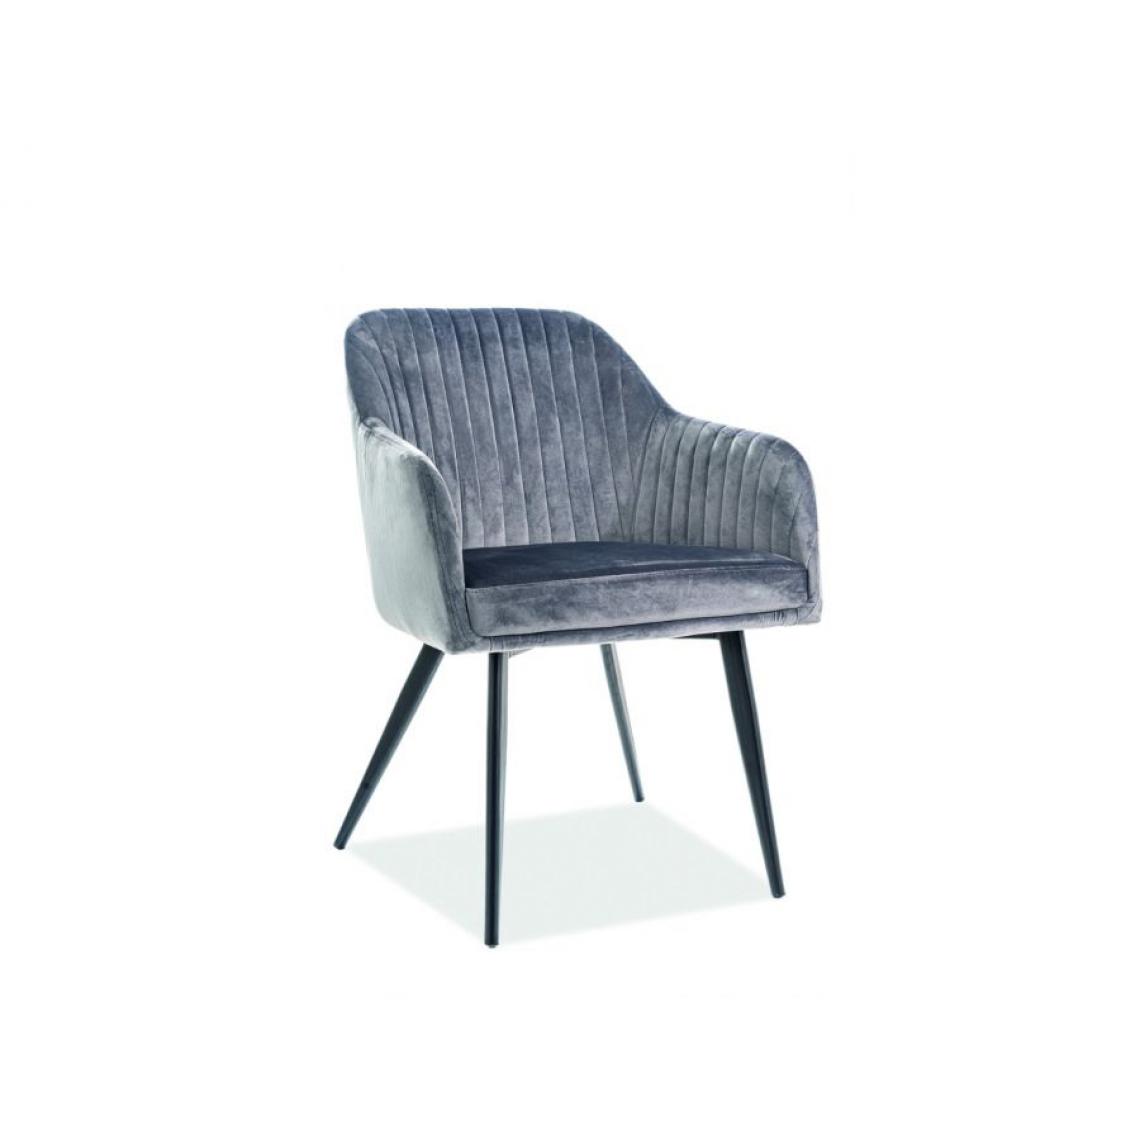 Hucoco - ELINE | Chaise matelassée avec pieds en métal | Dimensions : 82x48x47 cm | Tissu velours | Design élégant - Gris - Chaises